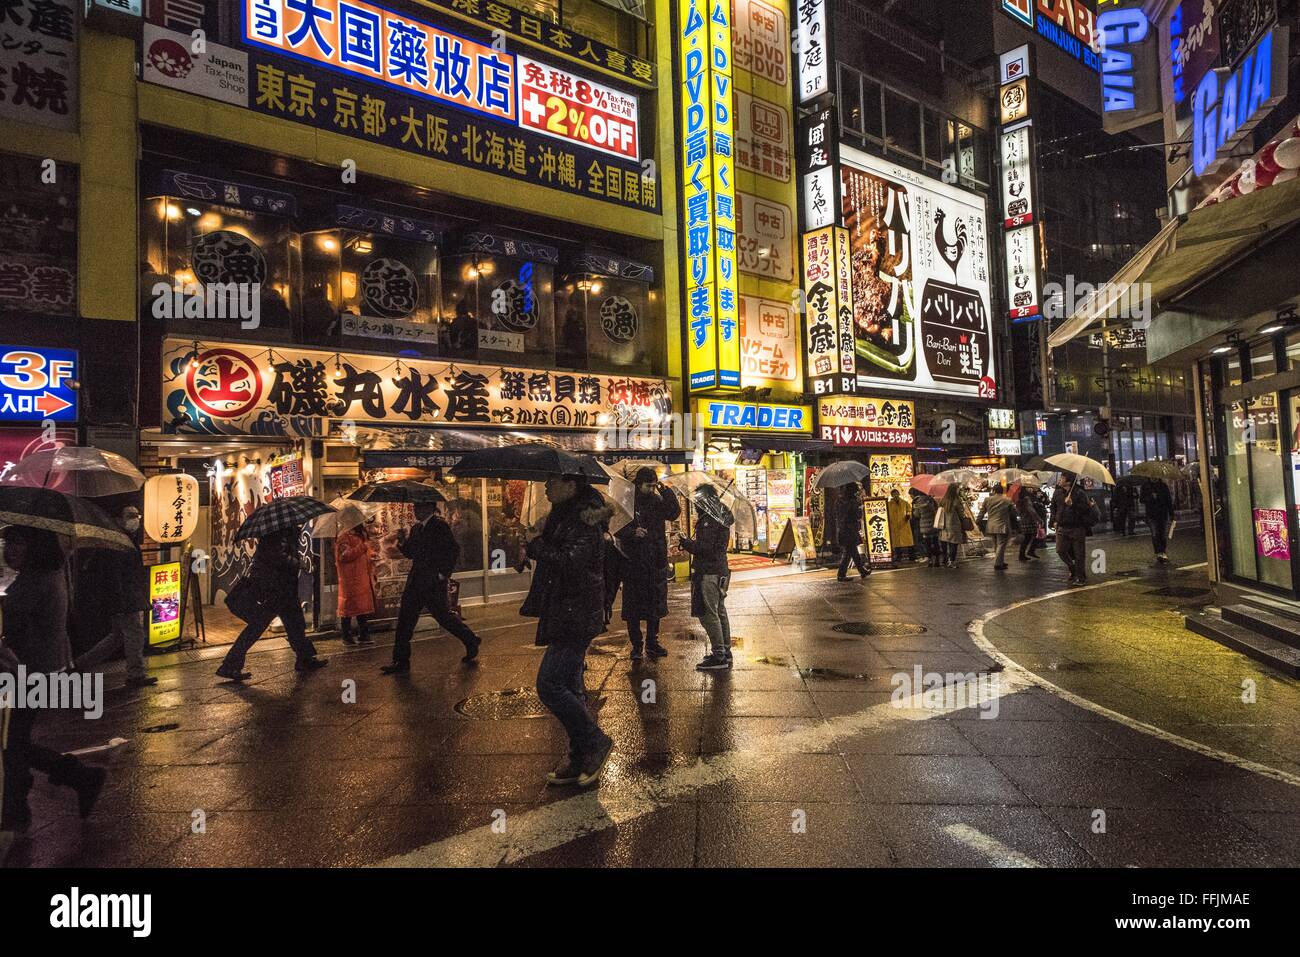 TOKYO, JAPAN - January 29, 2016: Street scene in Shinjuku in rain Stock Photo